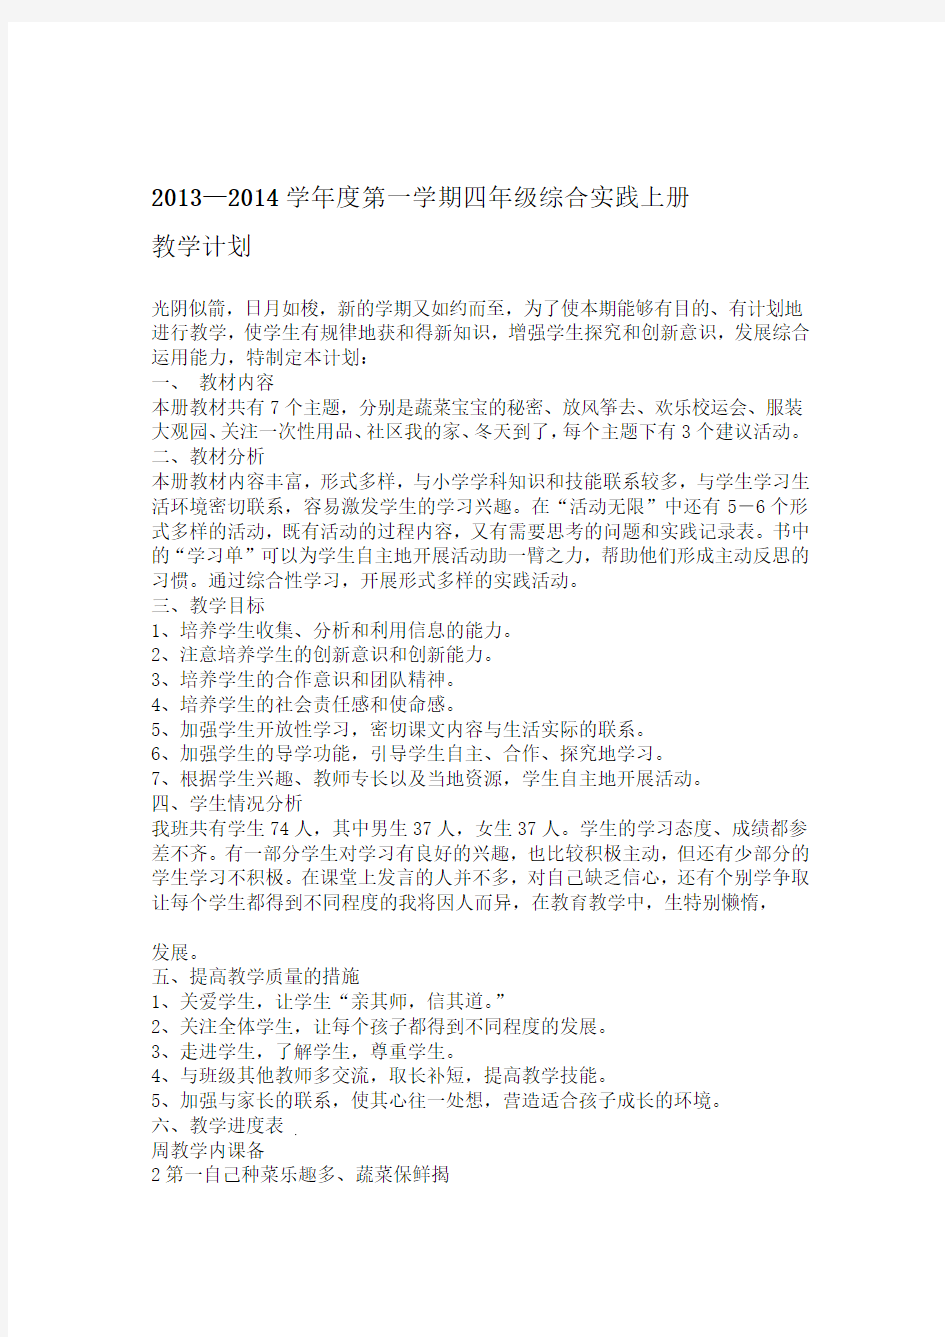 四年级上册综合实践活动教案上海科技教育出版社91520